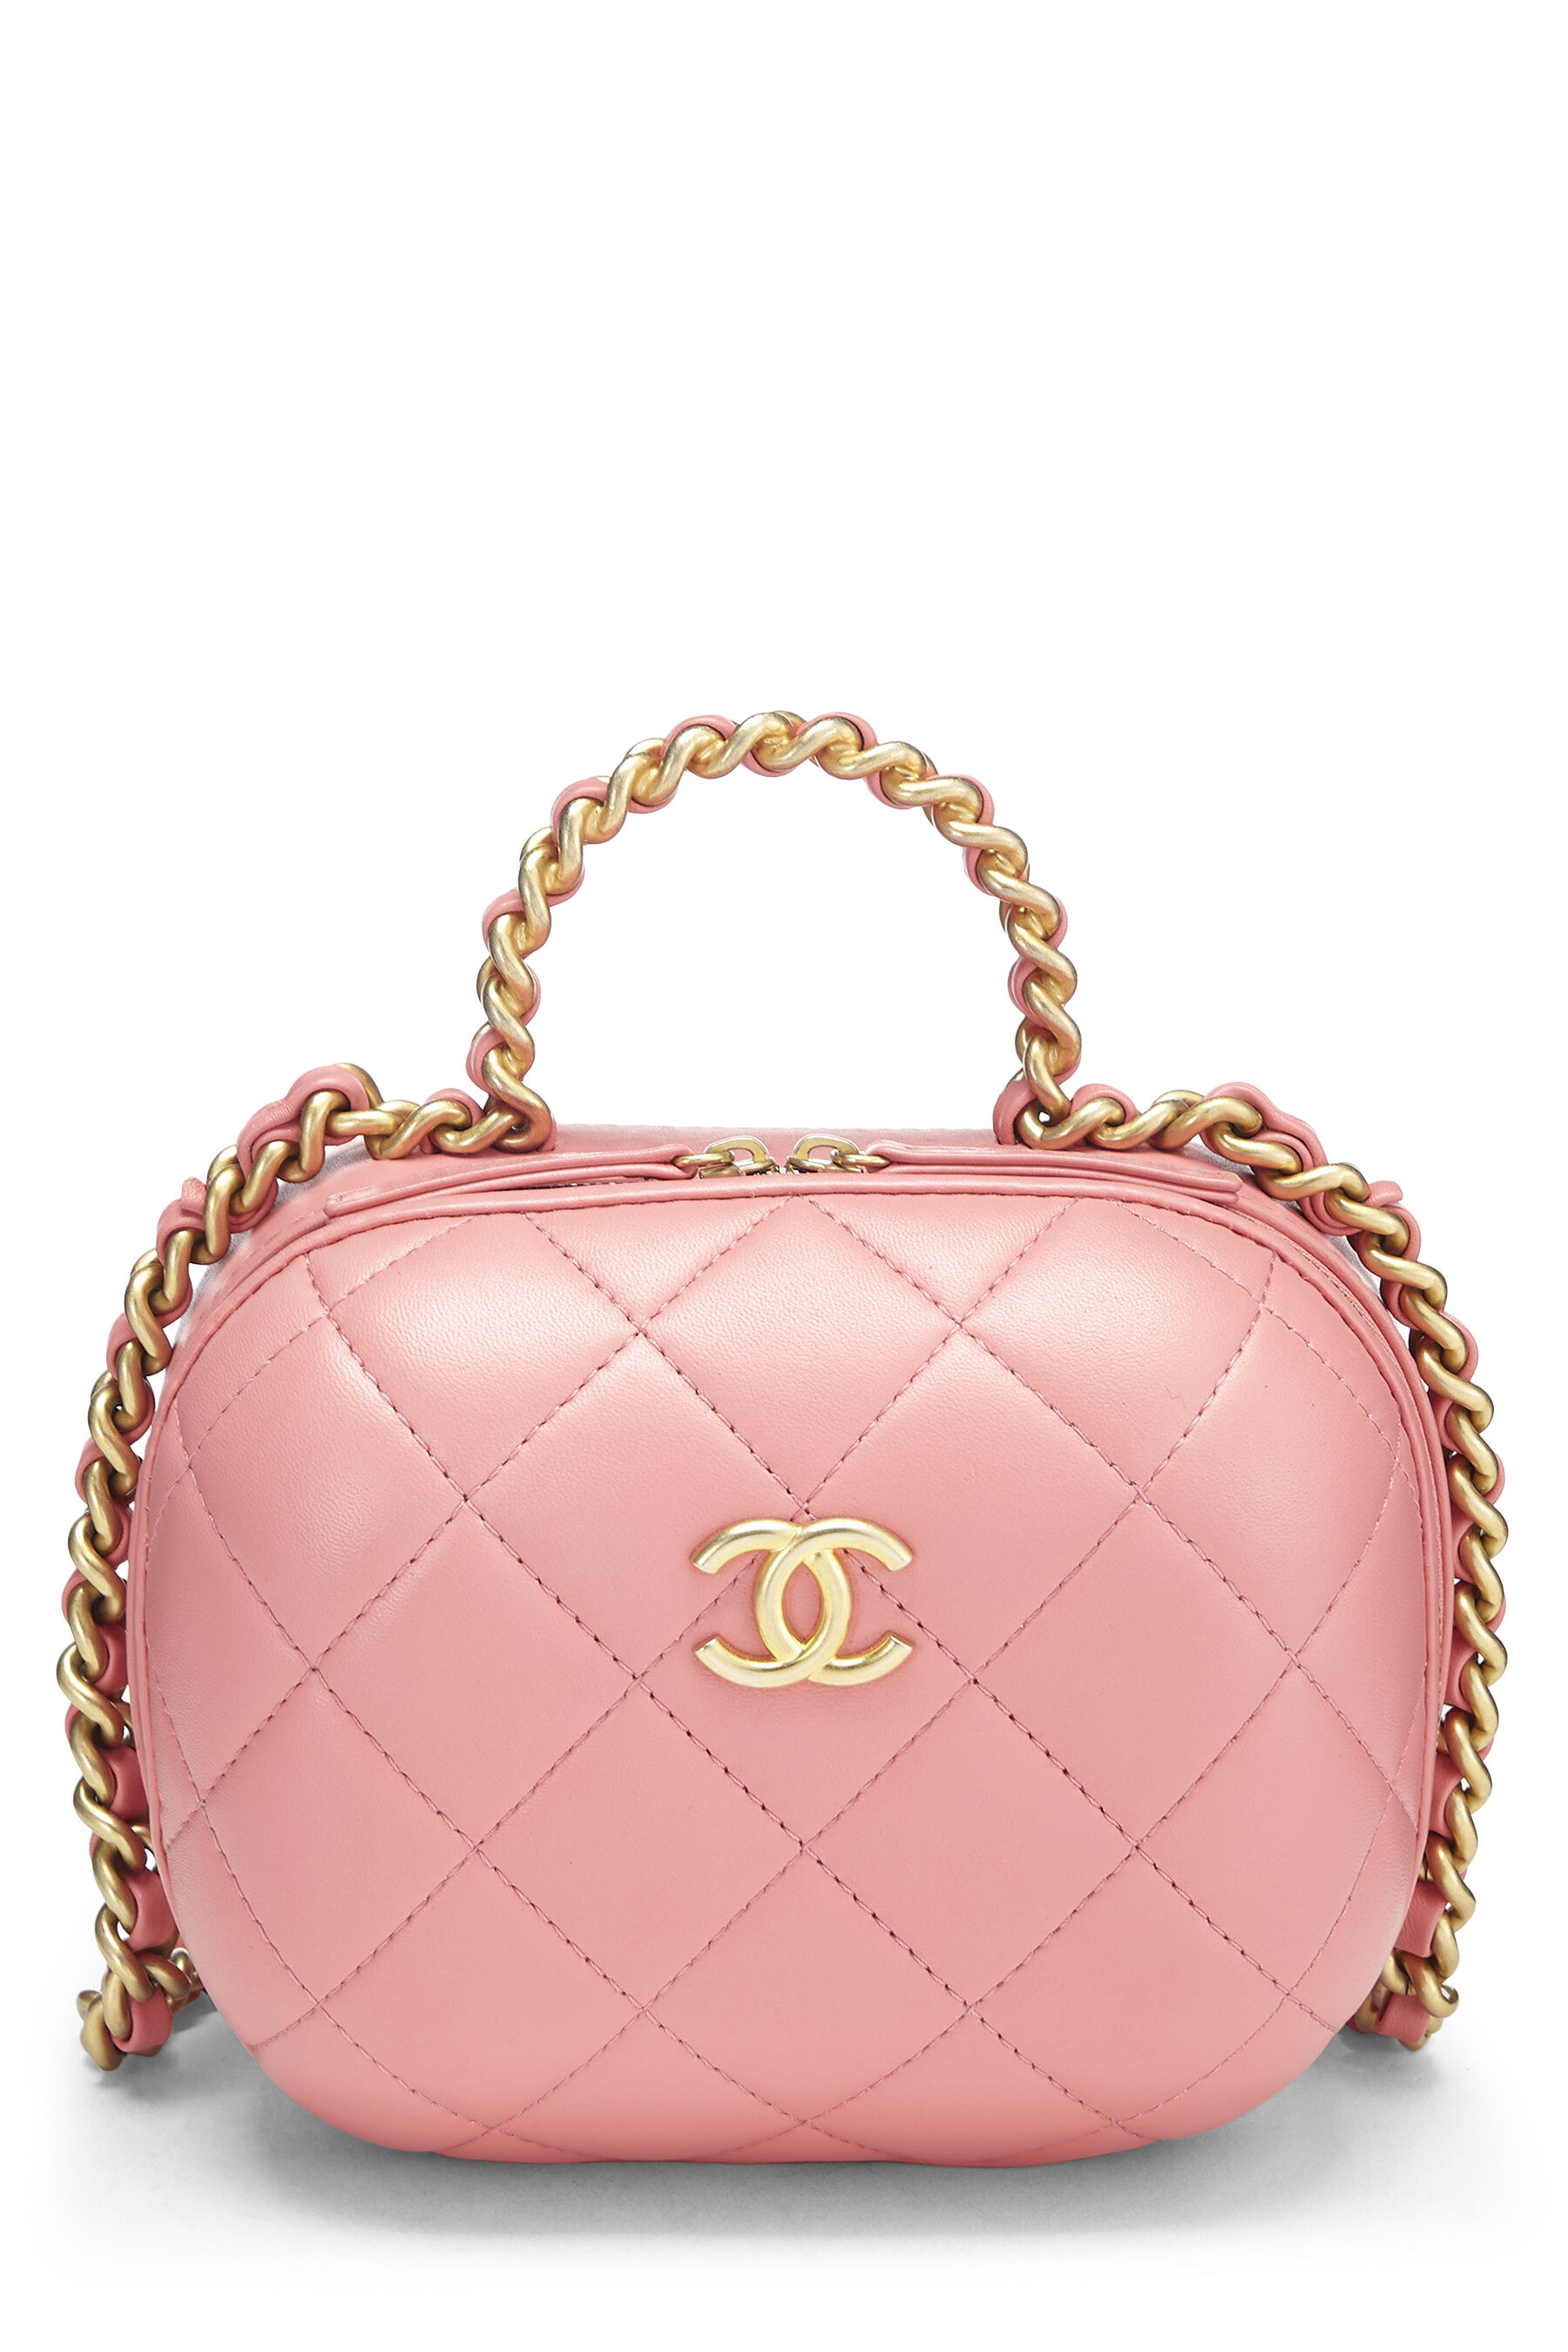 hot pink chanel handbag black